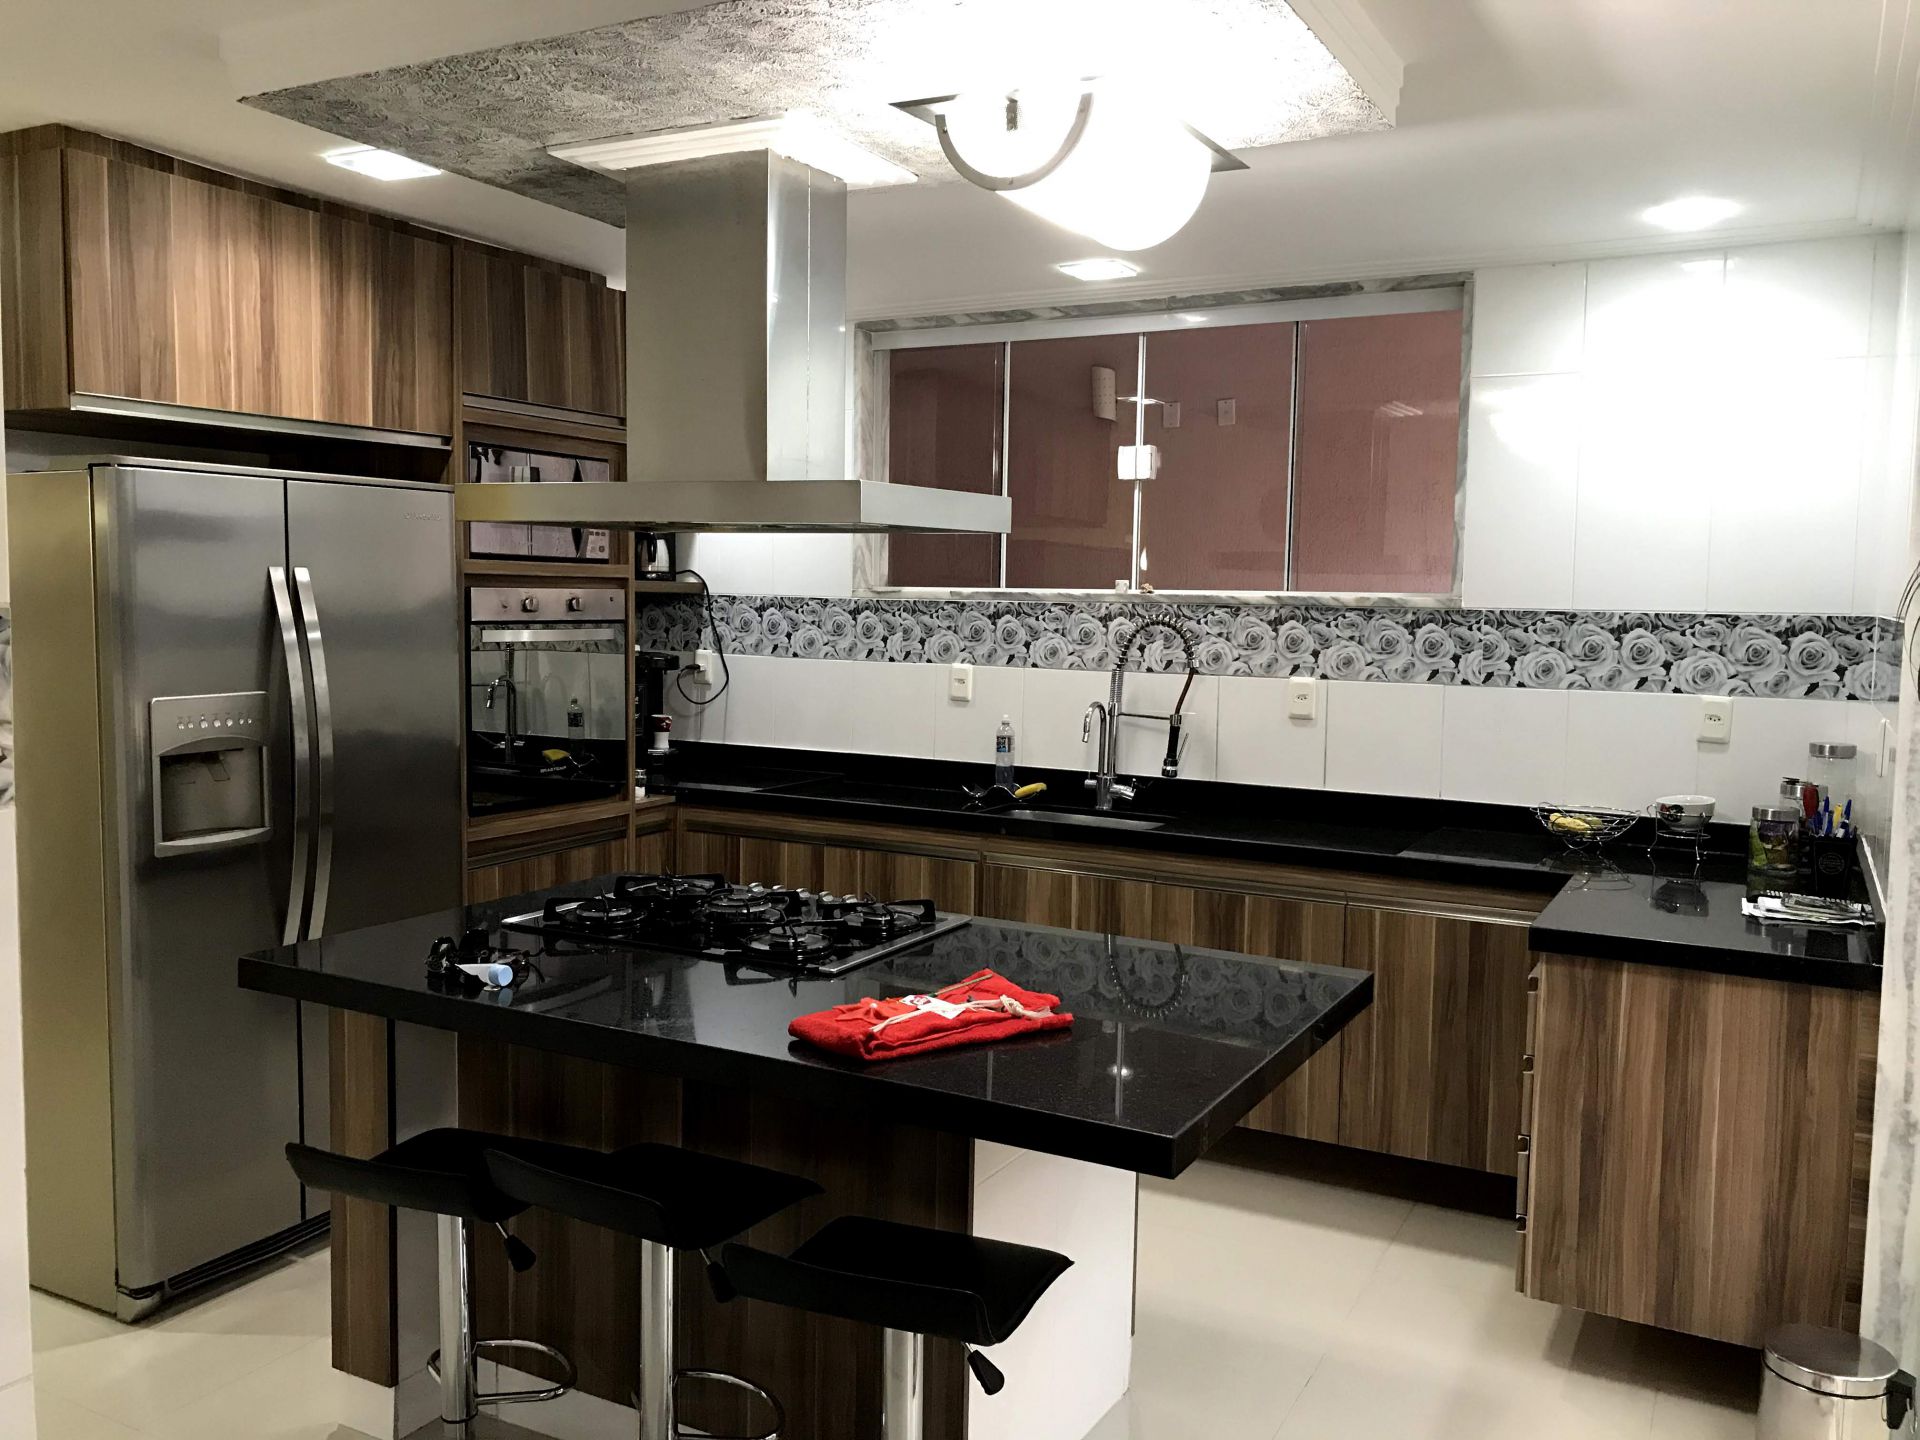 FOTO 5 - Casa em Condomínio 4 quartos à venda Vila Valqueire, Rio de Janeiro - R$ 1.500.000 - RF257 - 6